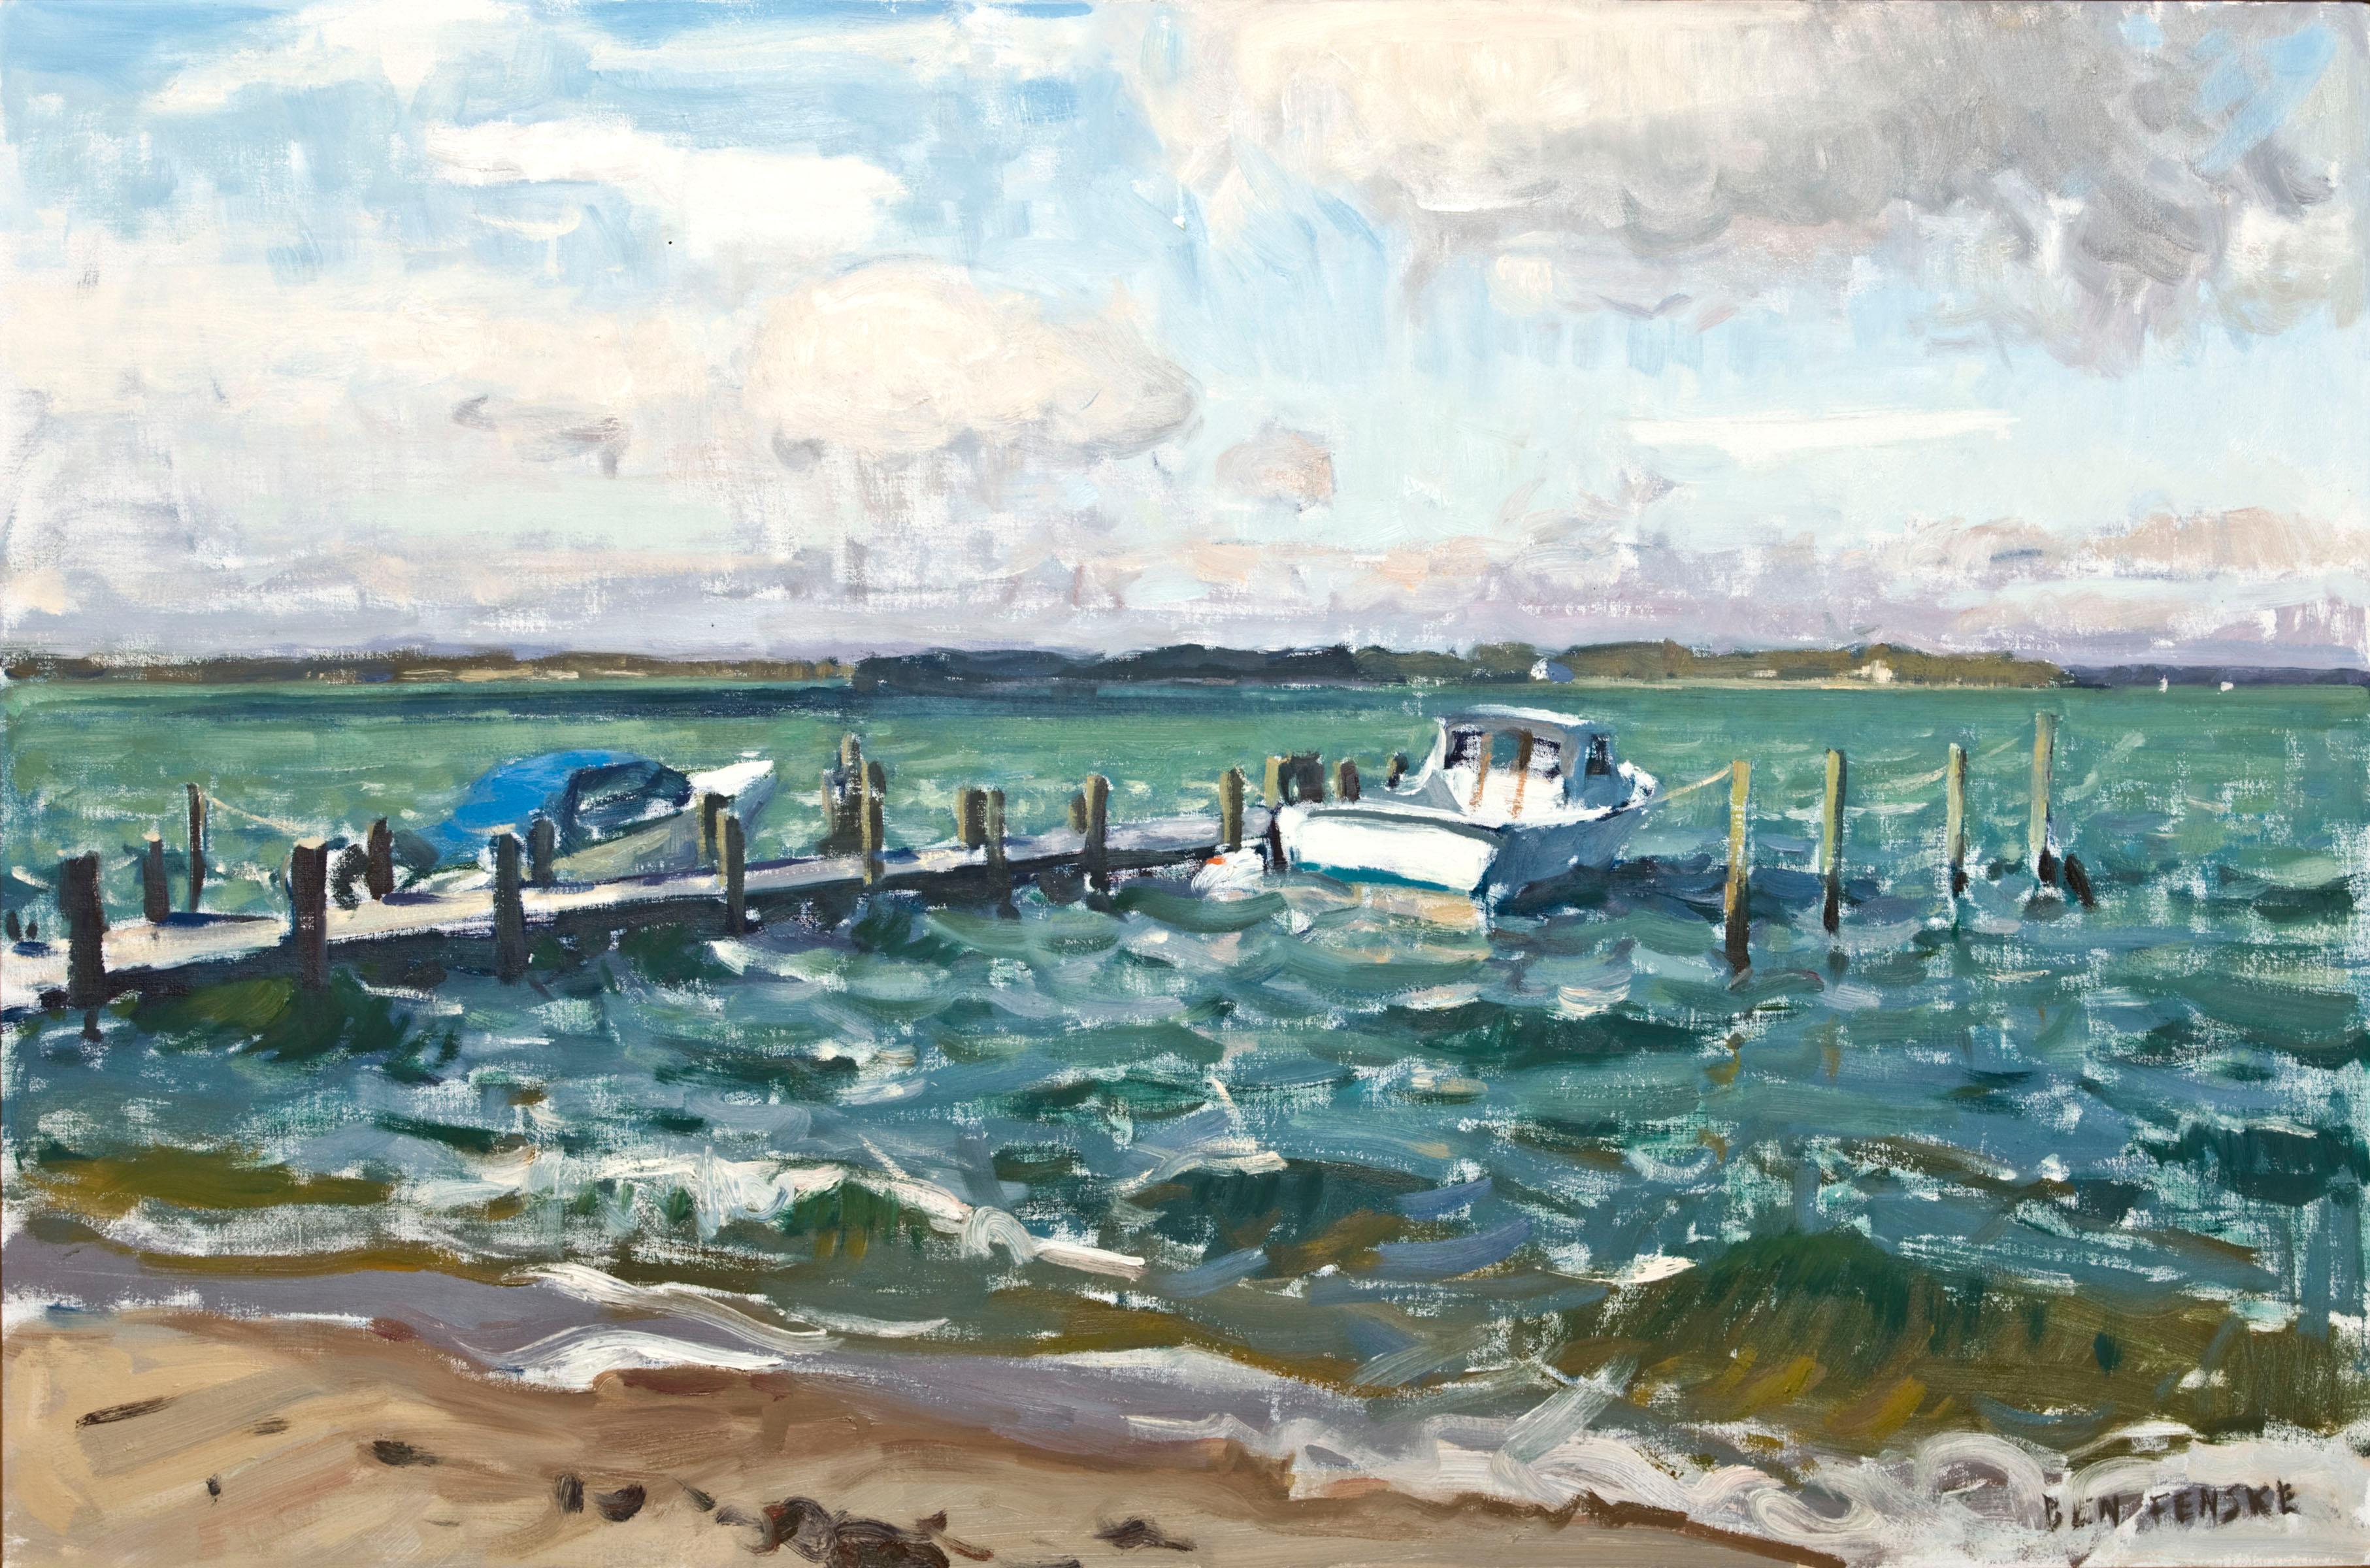 Landscape Painting Ben Fenske - « Working Girl », vue impressionniste d'un bateau de pêche sur les eaux de la baie de Long Island